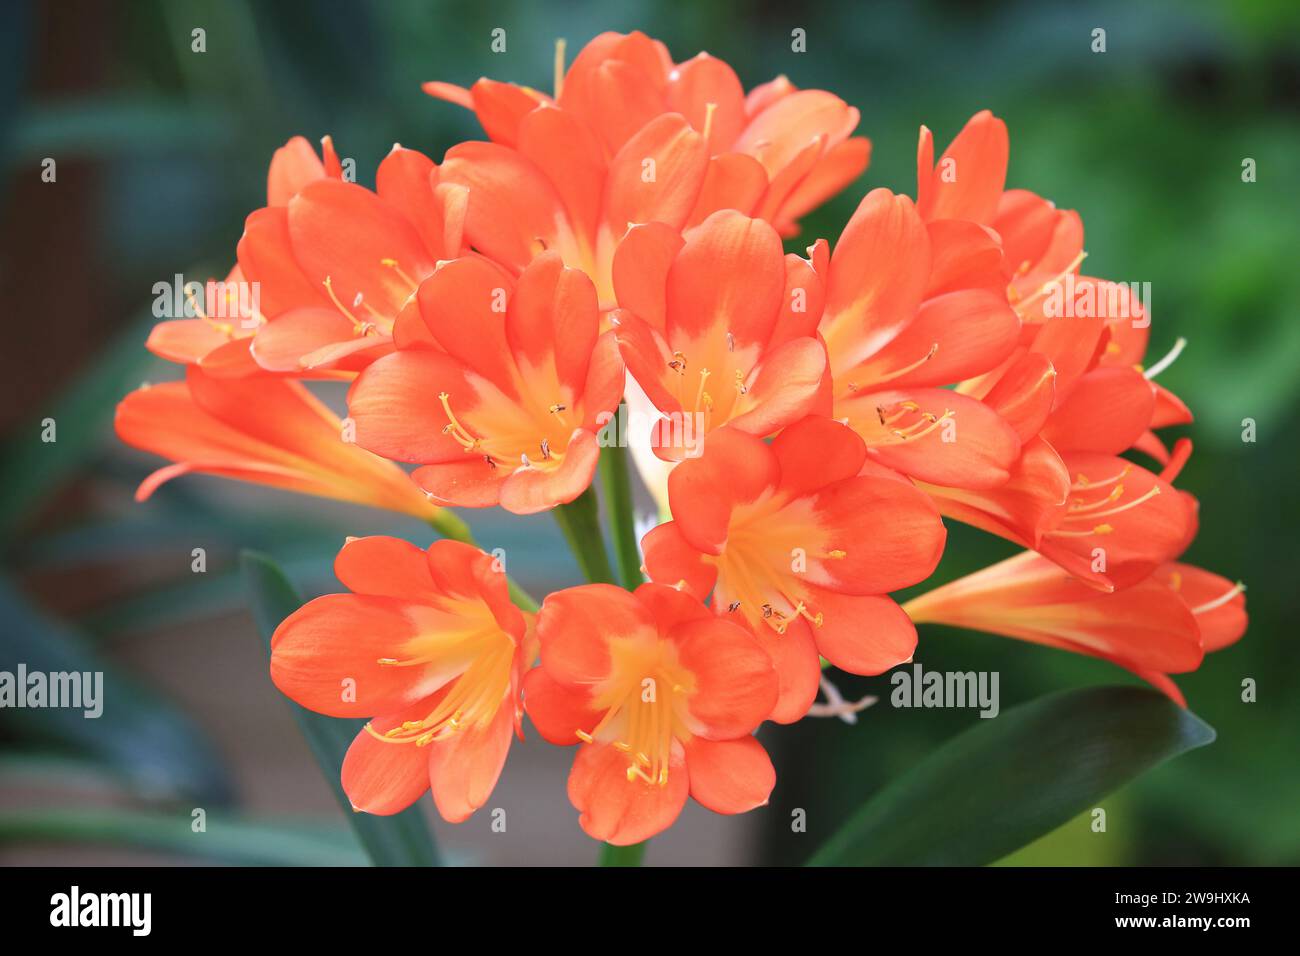 Clivia oder Benediction Lily oder Bush Lily oder Fire Lily oder Flame Lily oder Red Bush Lily oder Boslelie oder September Lily oder St John's Lily Blumen Stockfoto